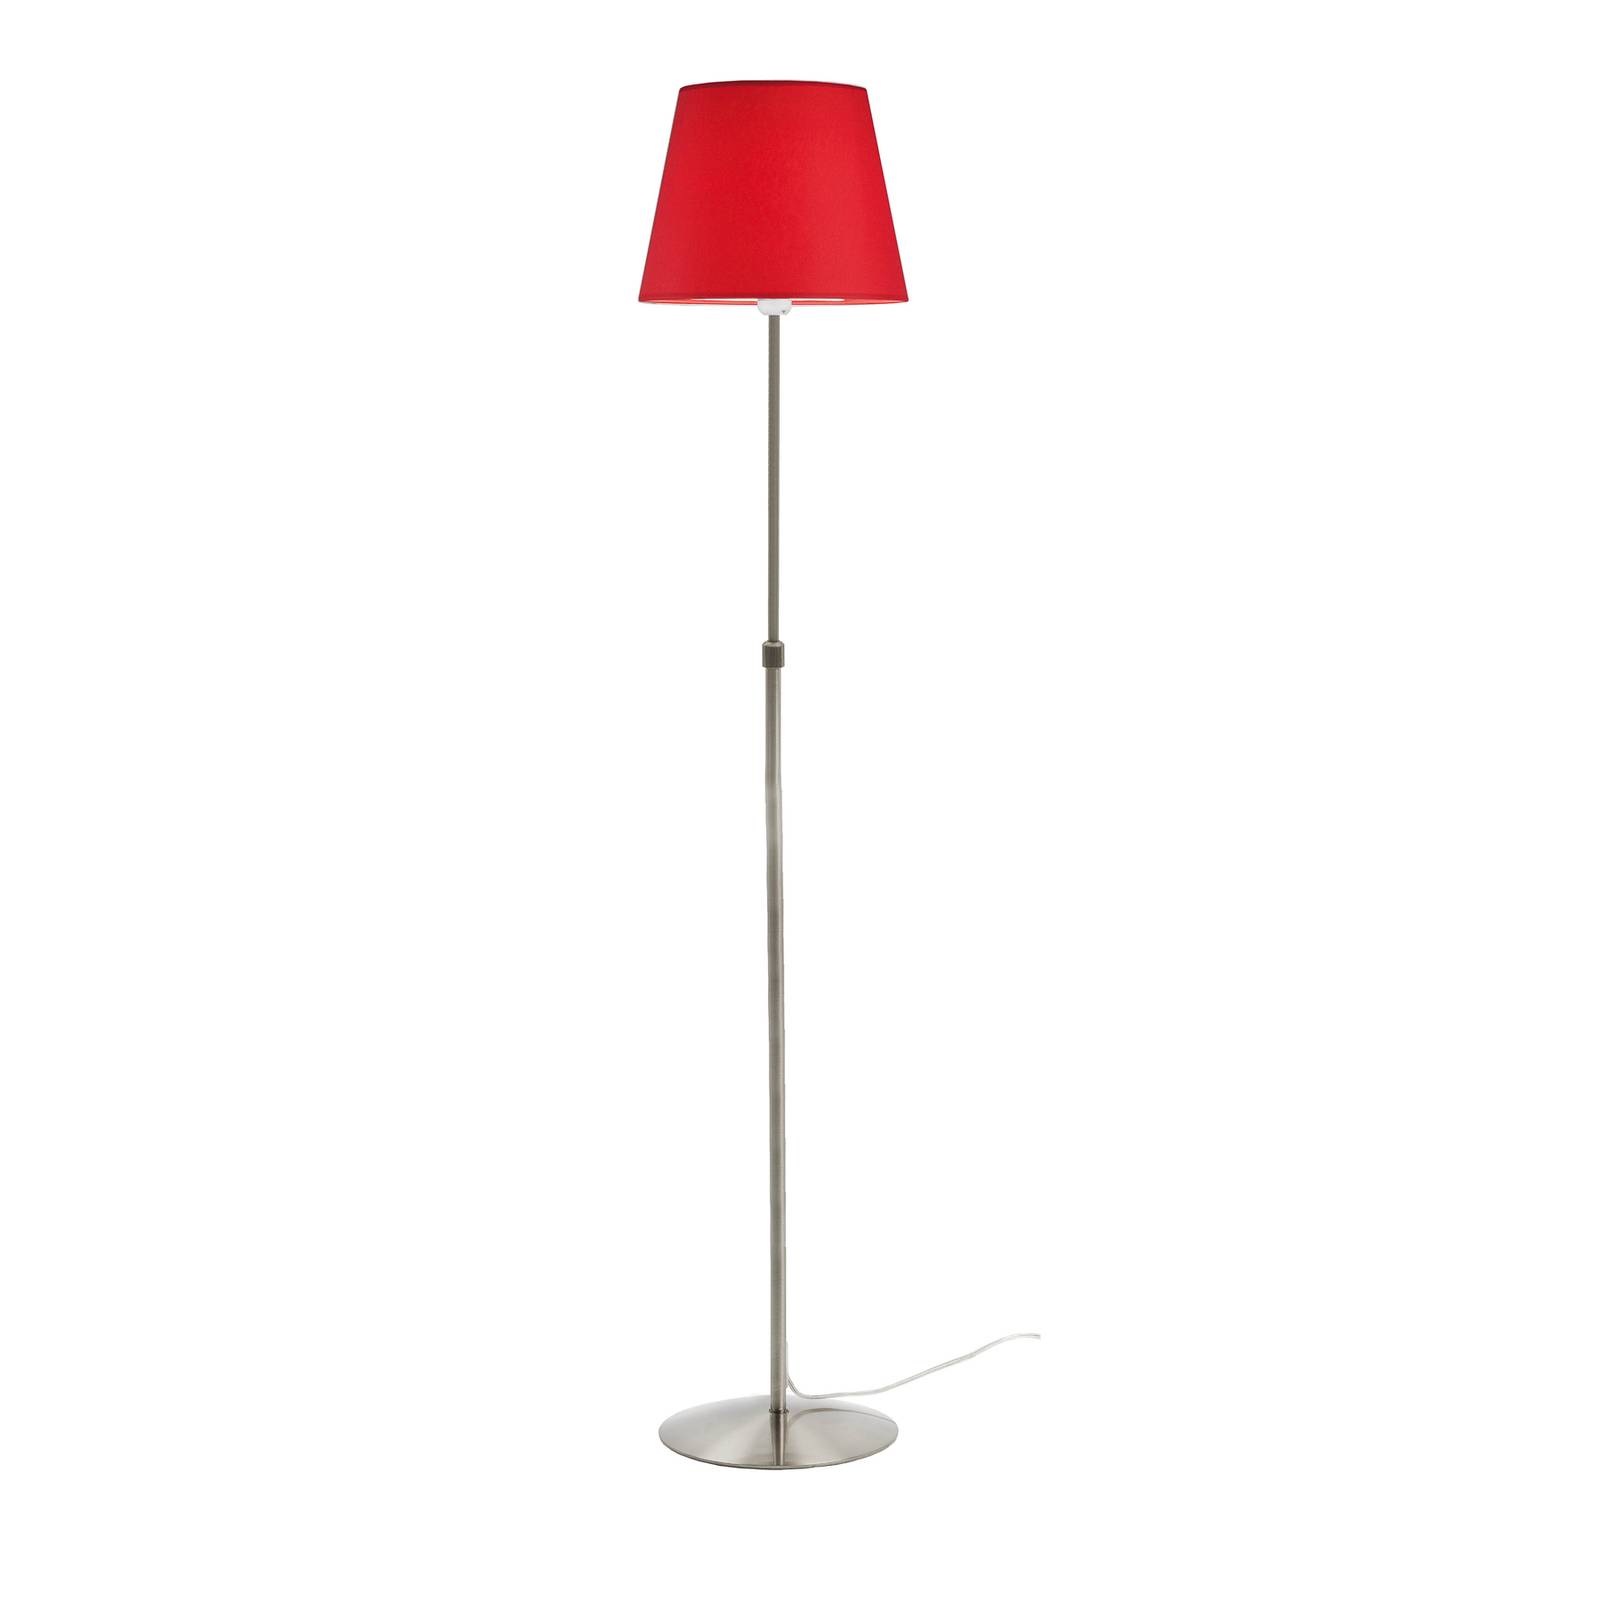 Aluminor Store álló lámpa, alumínium/piros